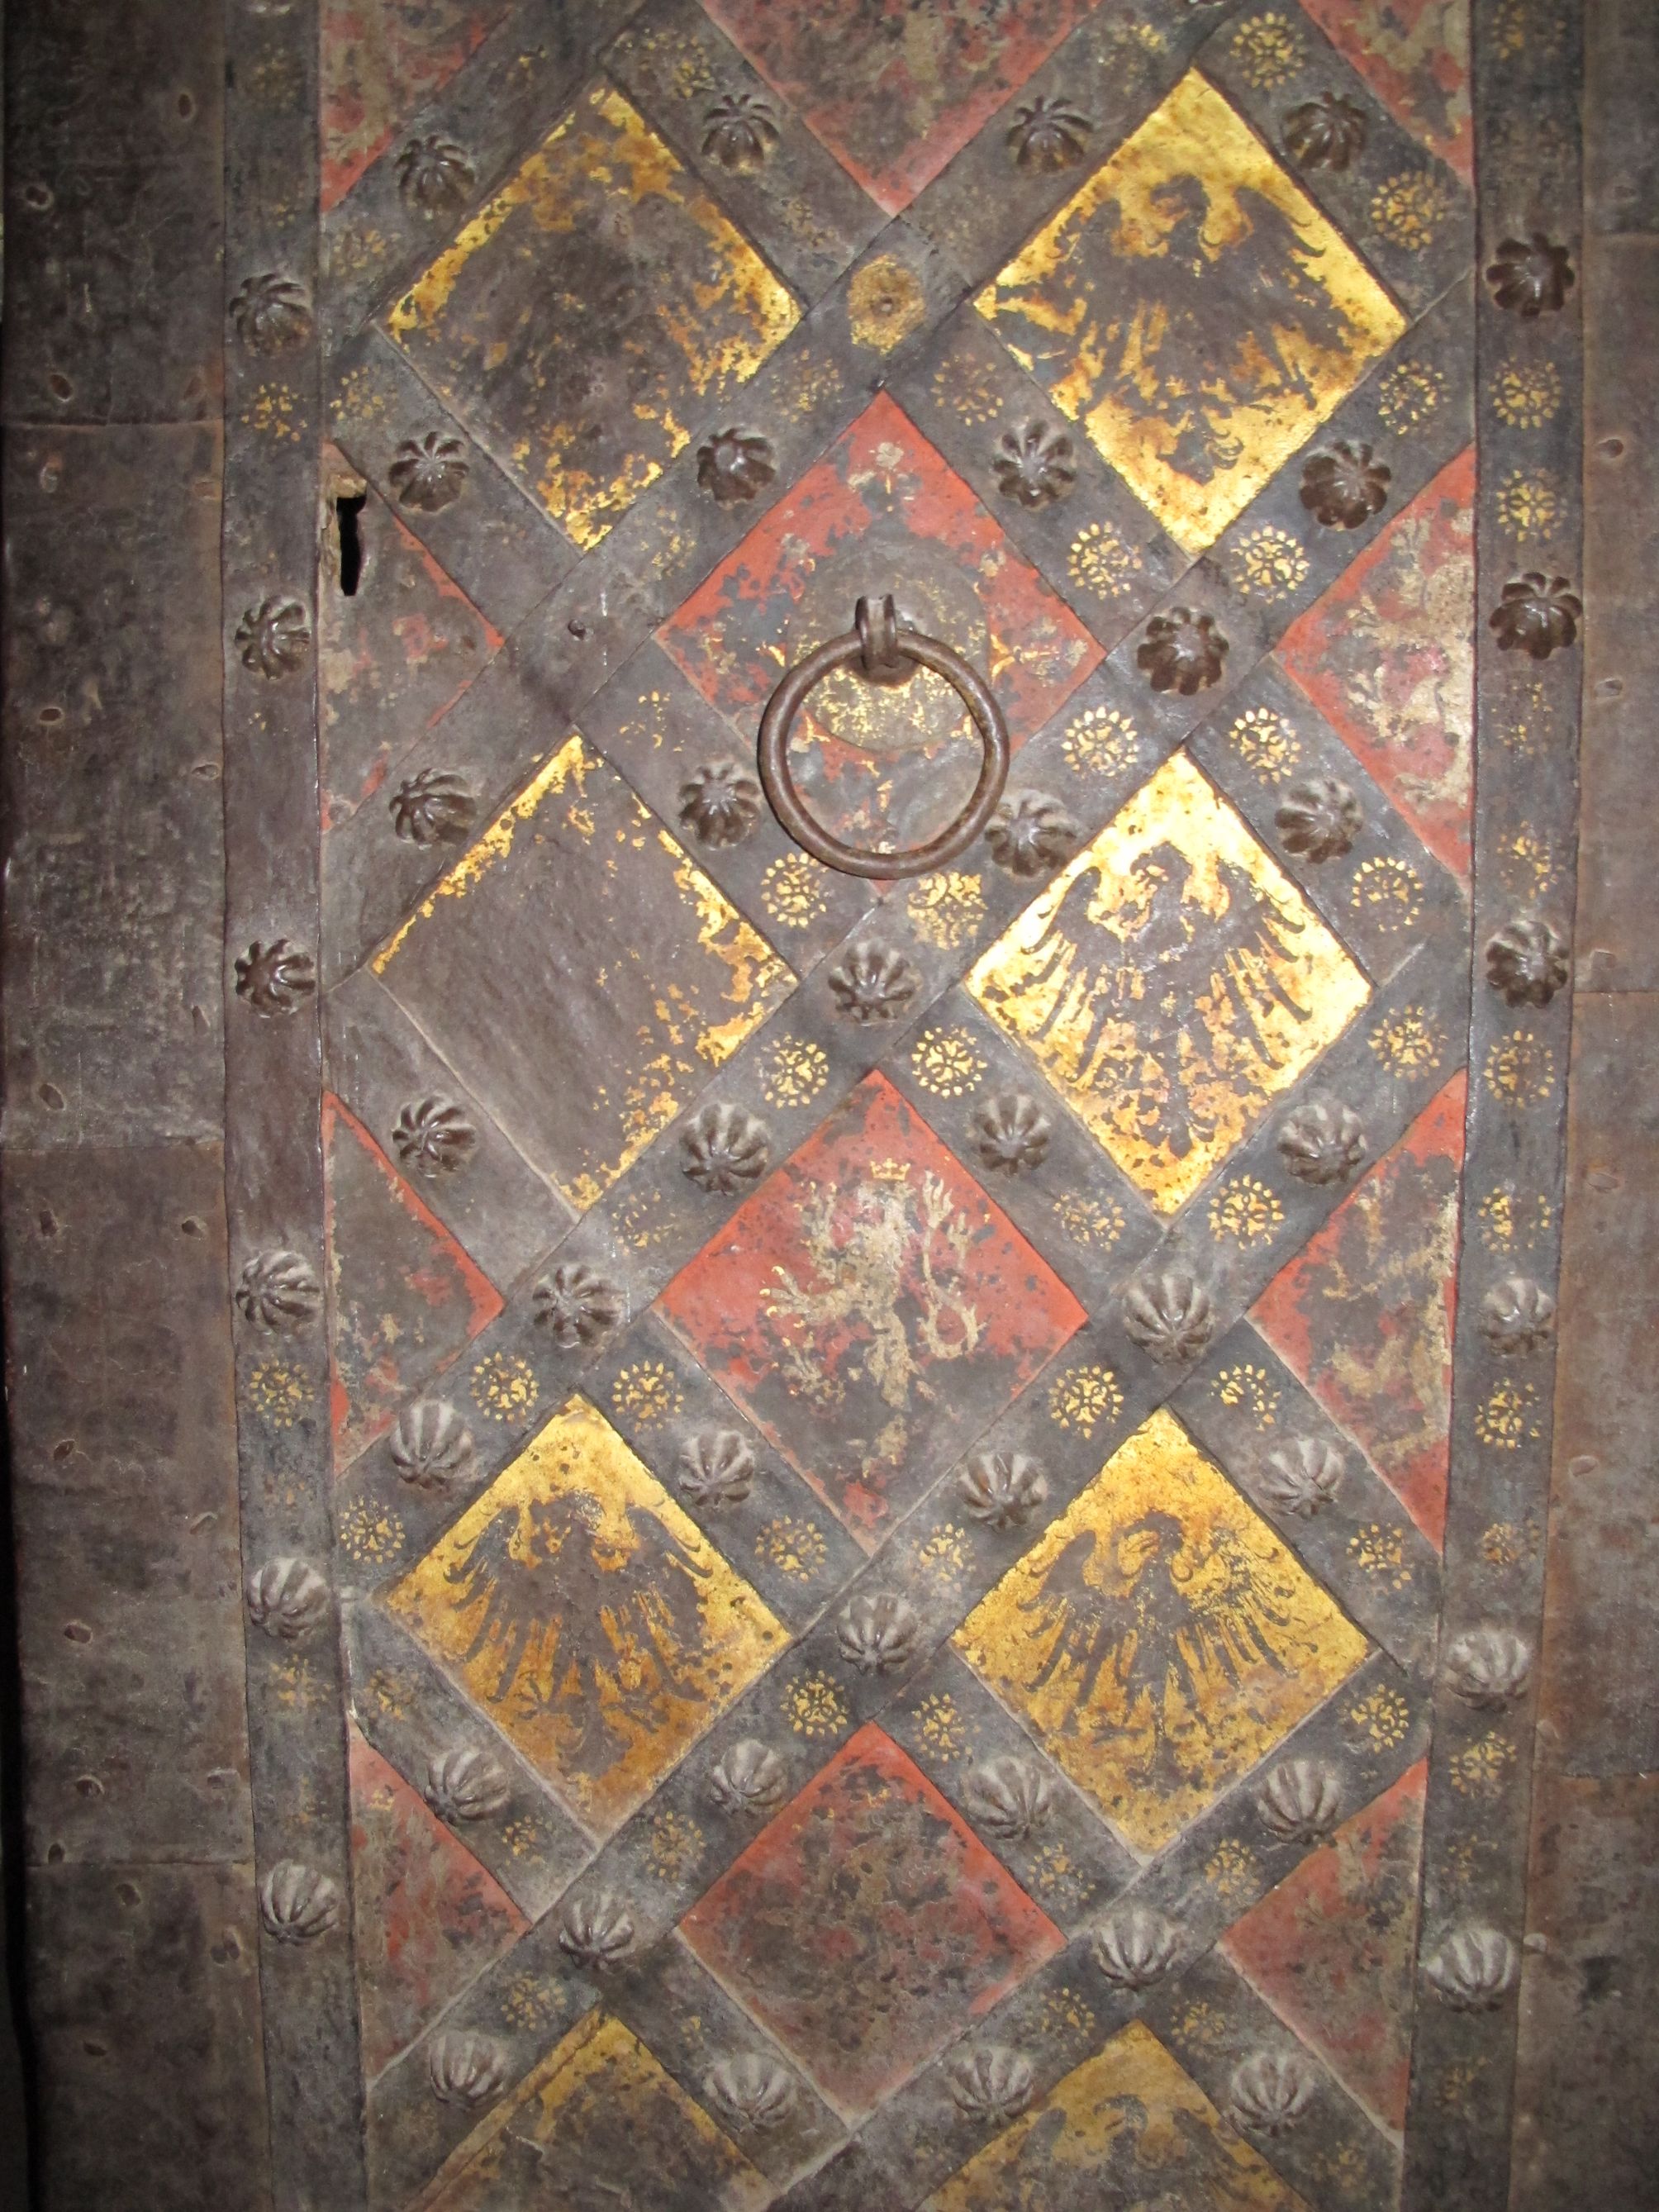 Heraldické motivy českého lva a říšské orlice na vstupních dveřích do kaple sv. Kateřiny nesou v sobě i alchymickou symboliku